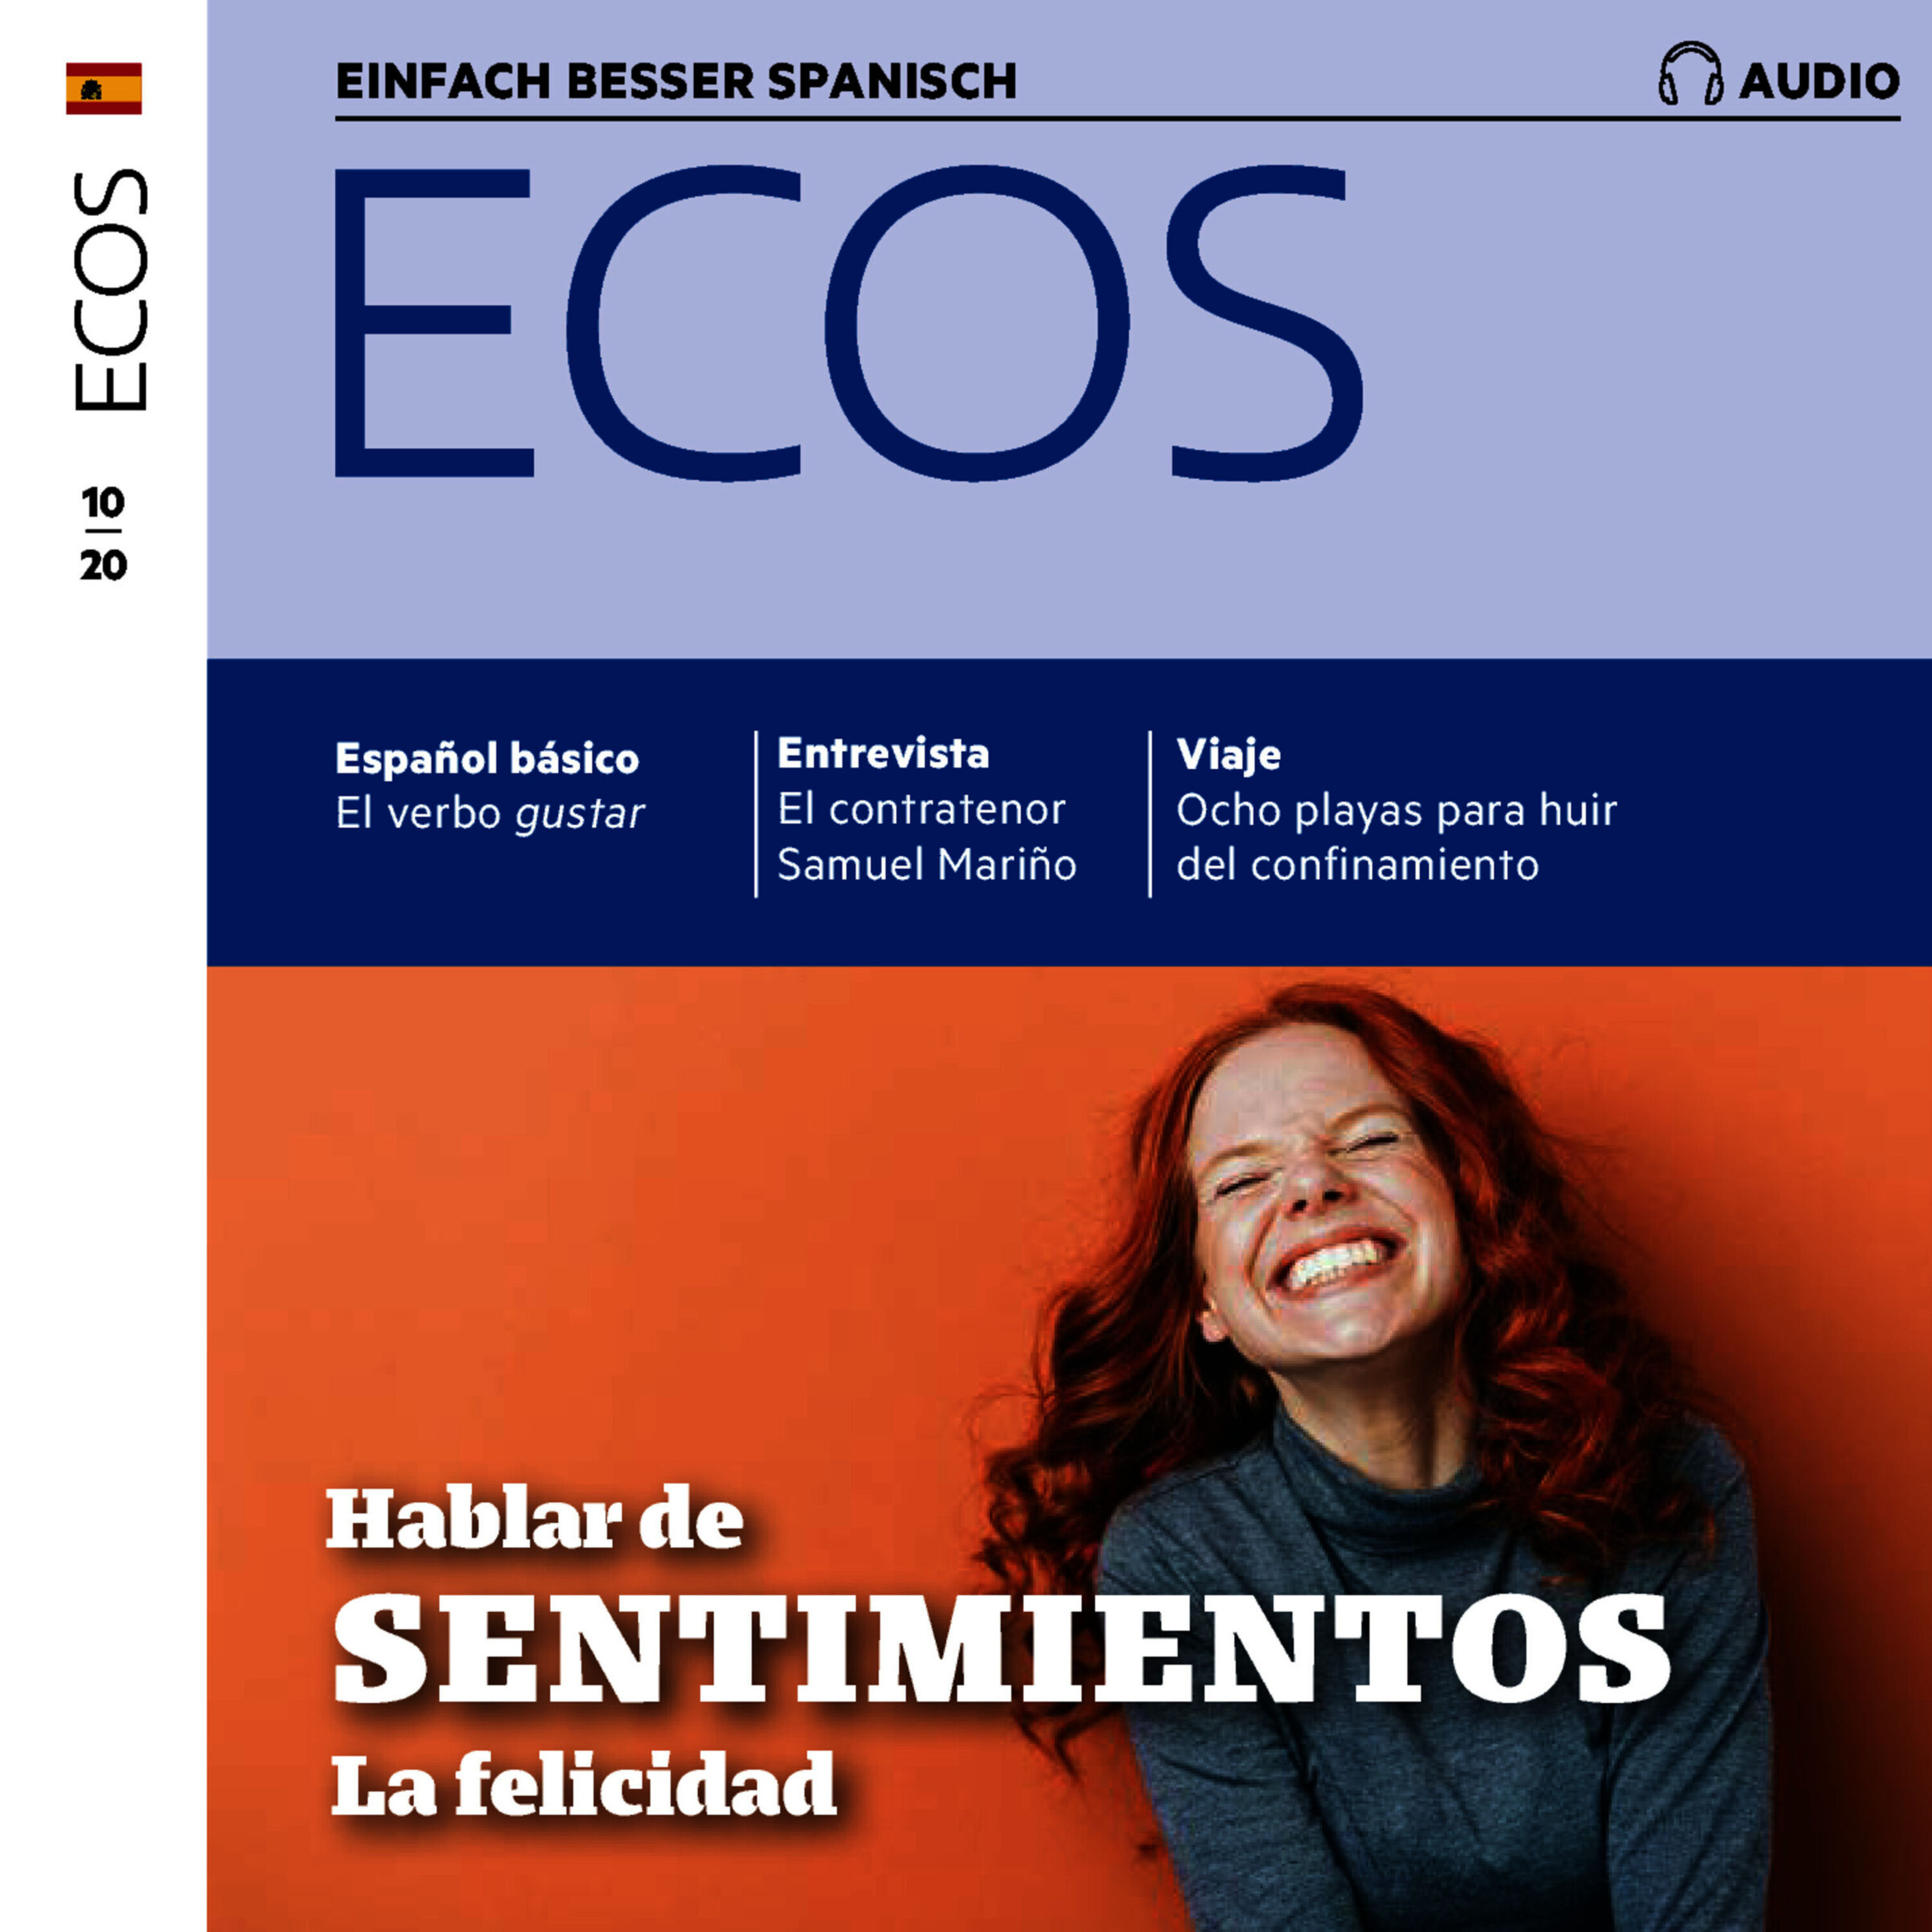 Ecos Audio - Spanisch lernen Audio - Über Gefühle sprechen Hörbuch Download